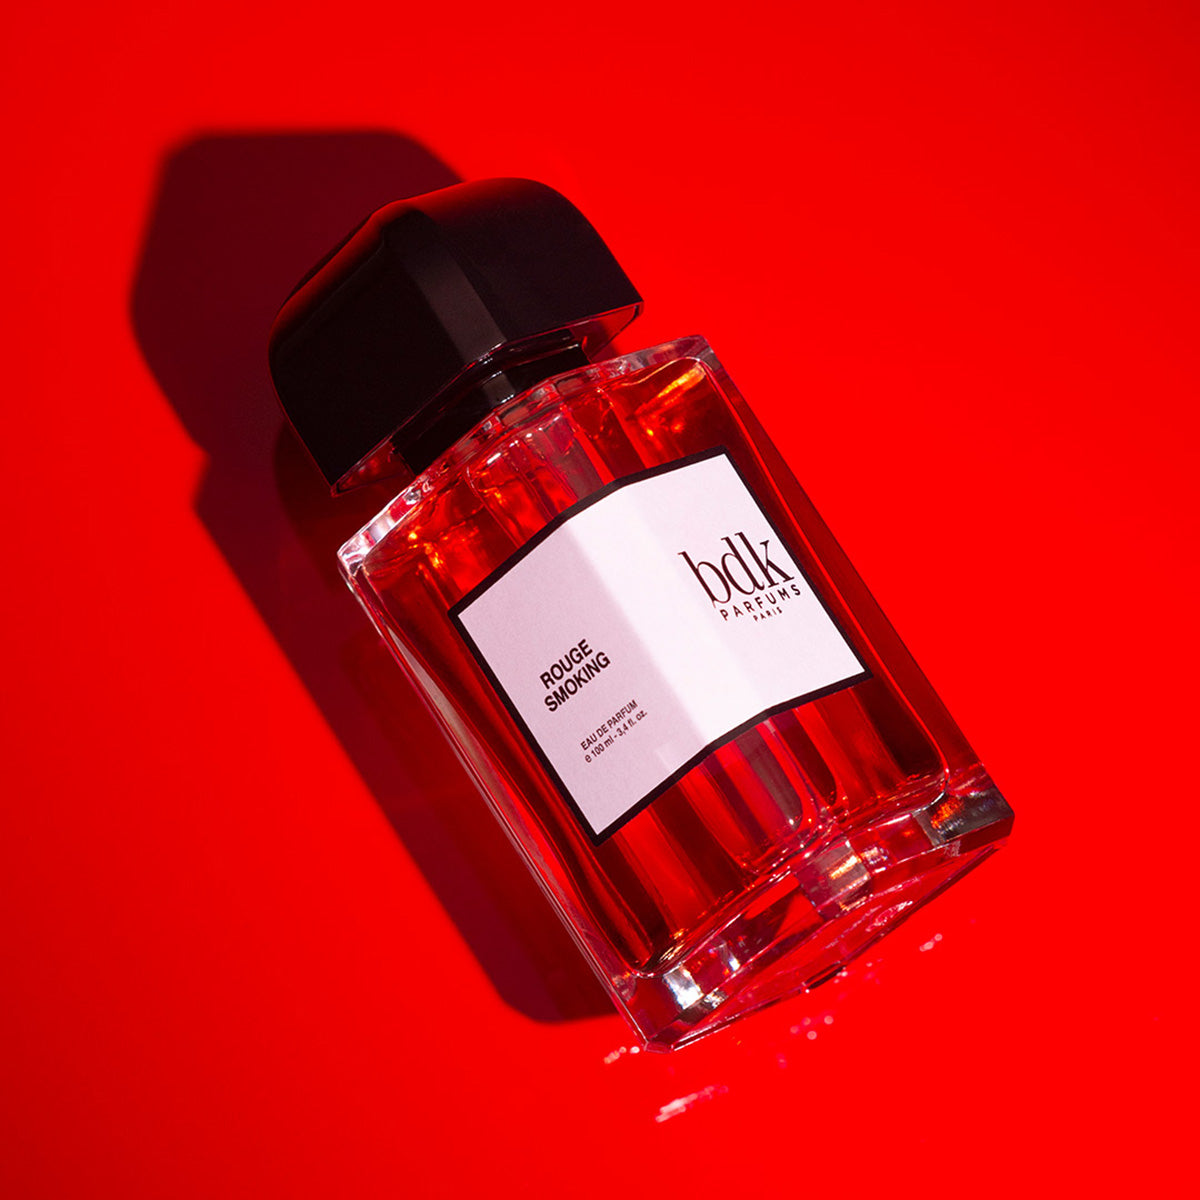 Rouge Smoking - BDK Parfums - EDP 100ml